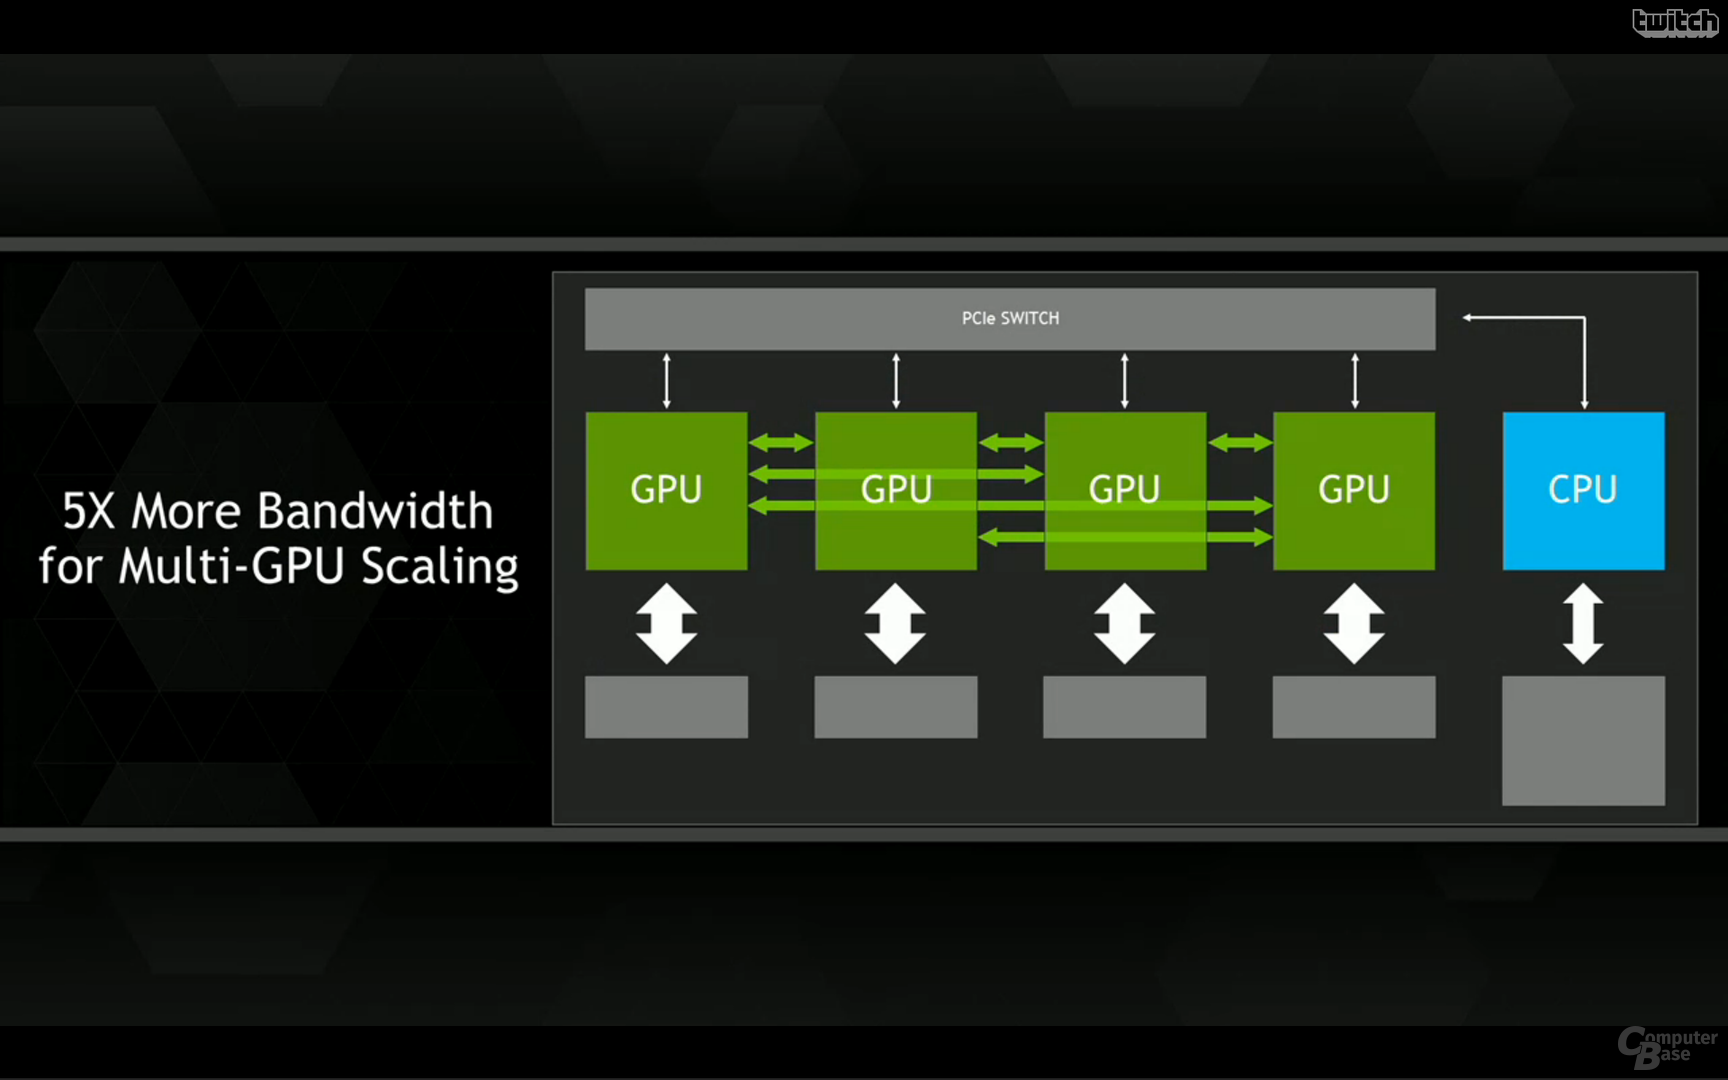 Nvidia GPU "Pascal"